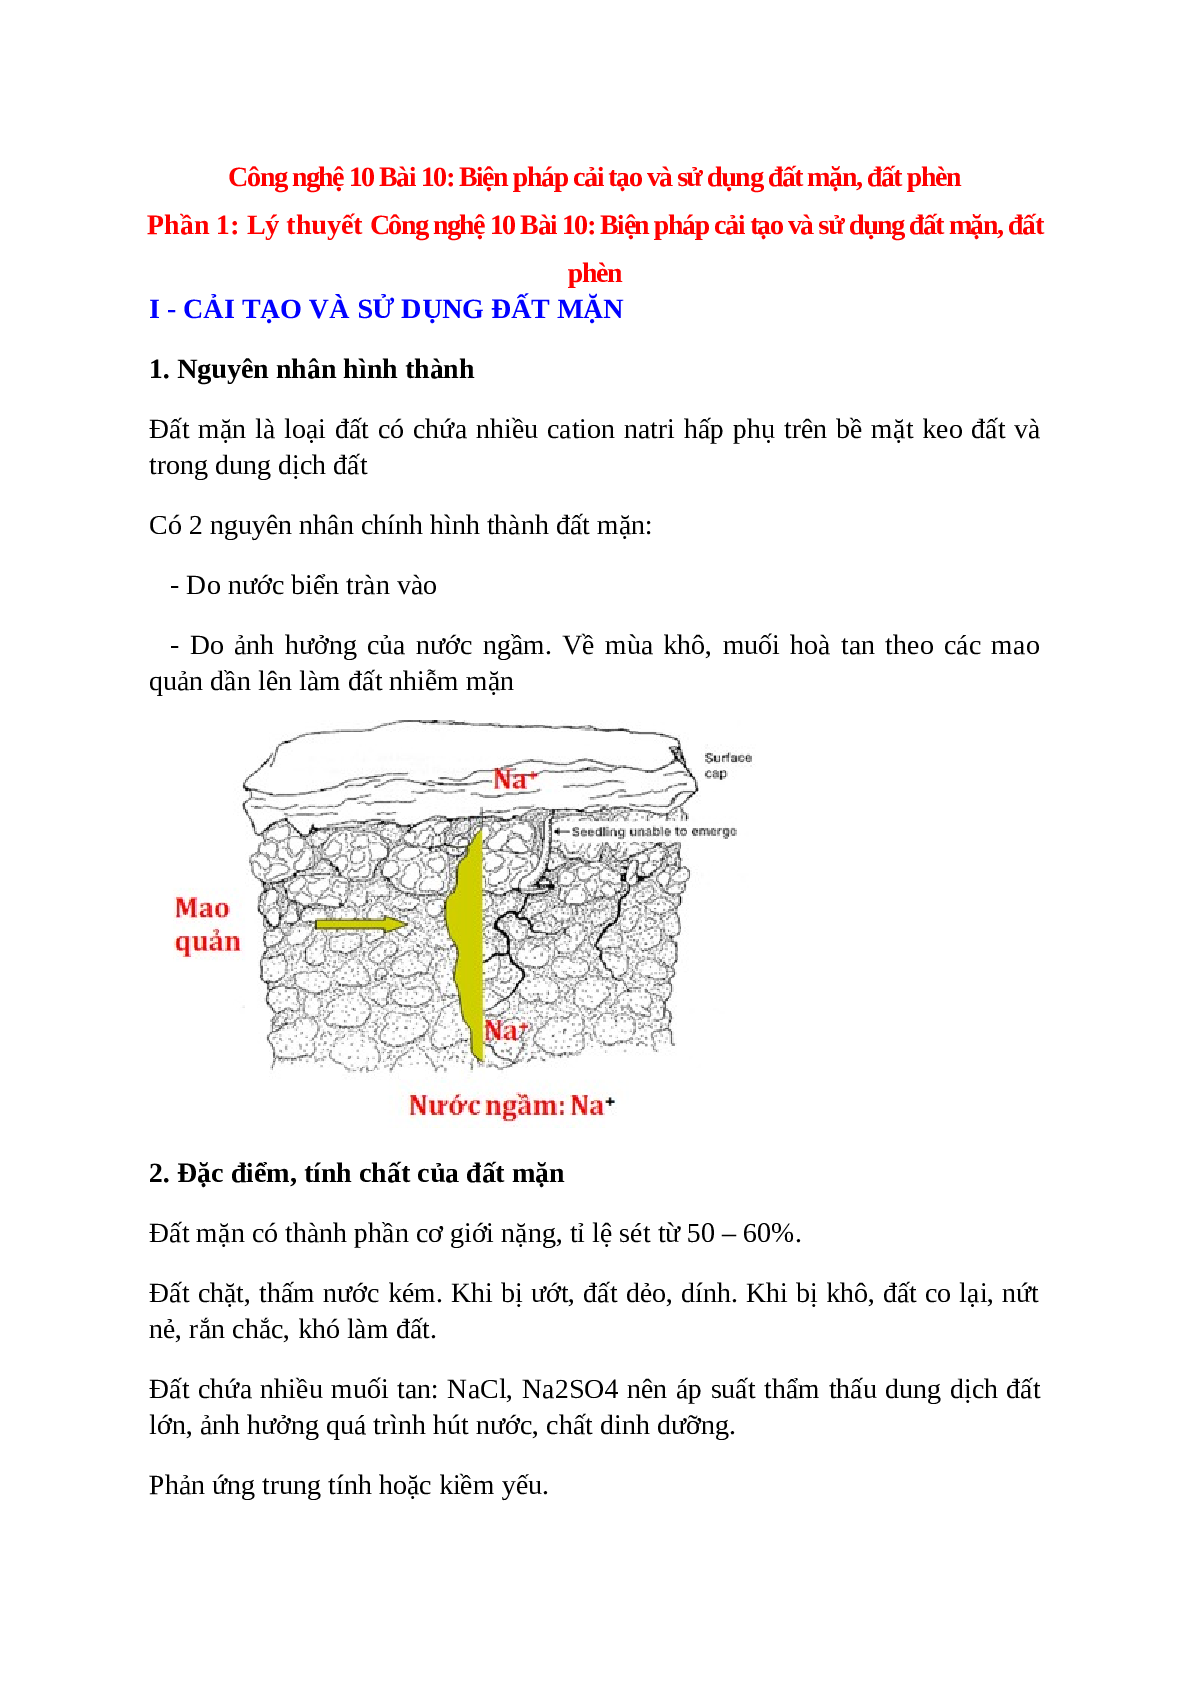 Công nghệ 10 Bài 10 (Lý thuyết và trắc nghiệm): Biện pháp cải tạo và sử dụng đất mặn, đất phèn (trang 1)